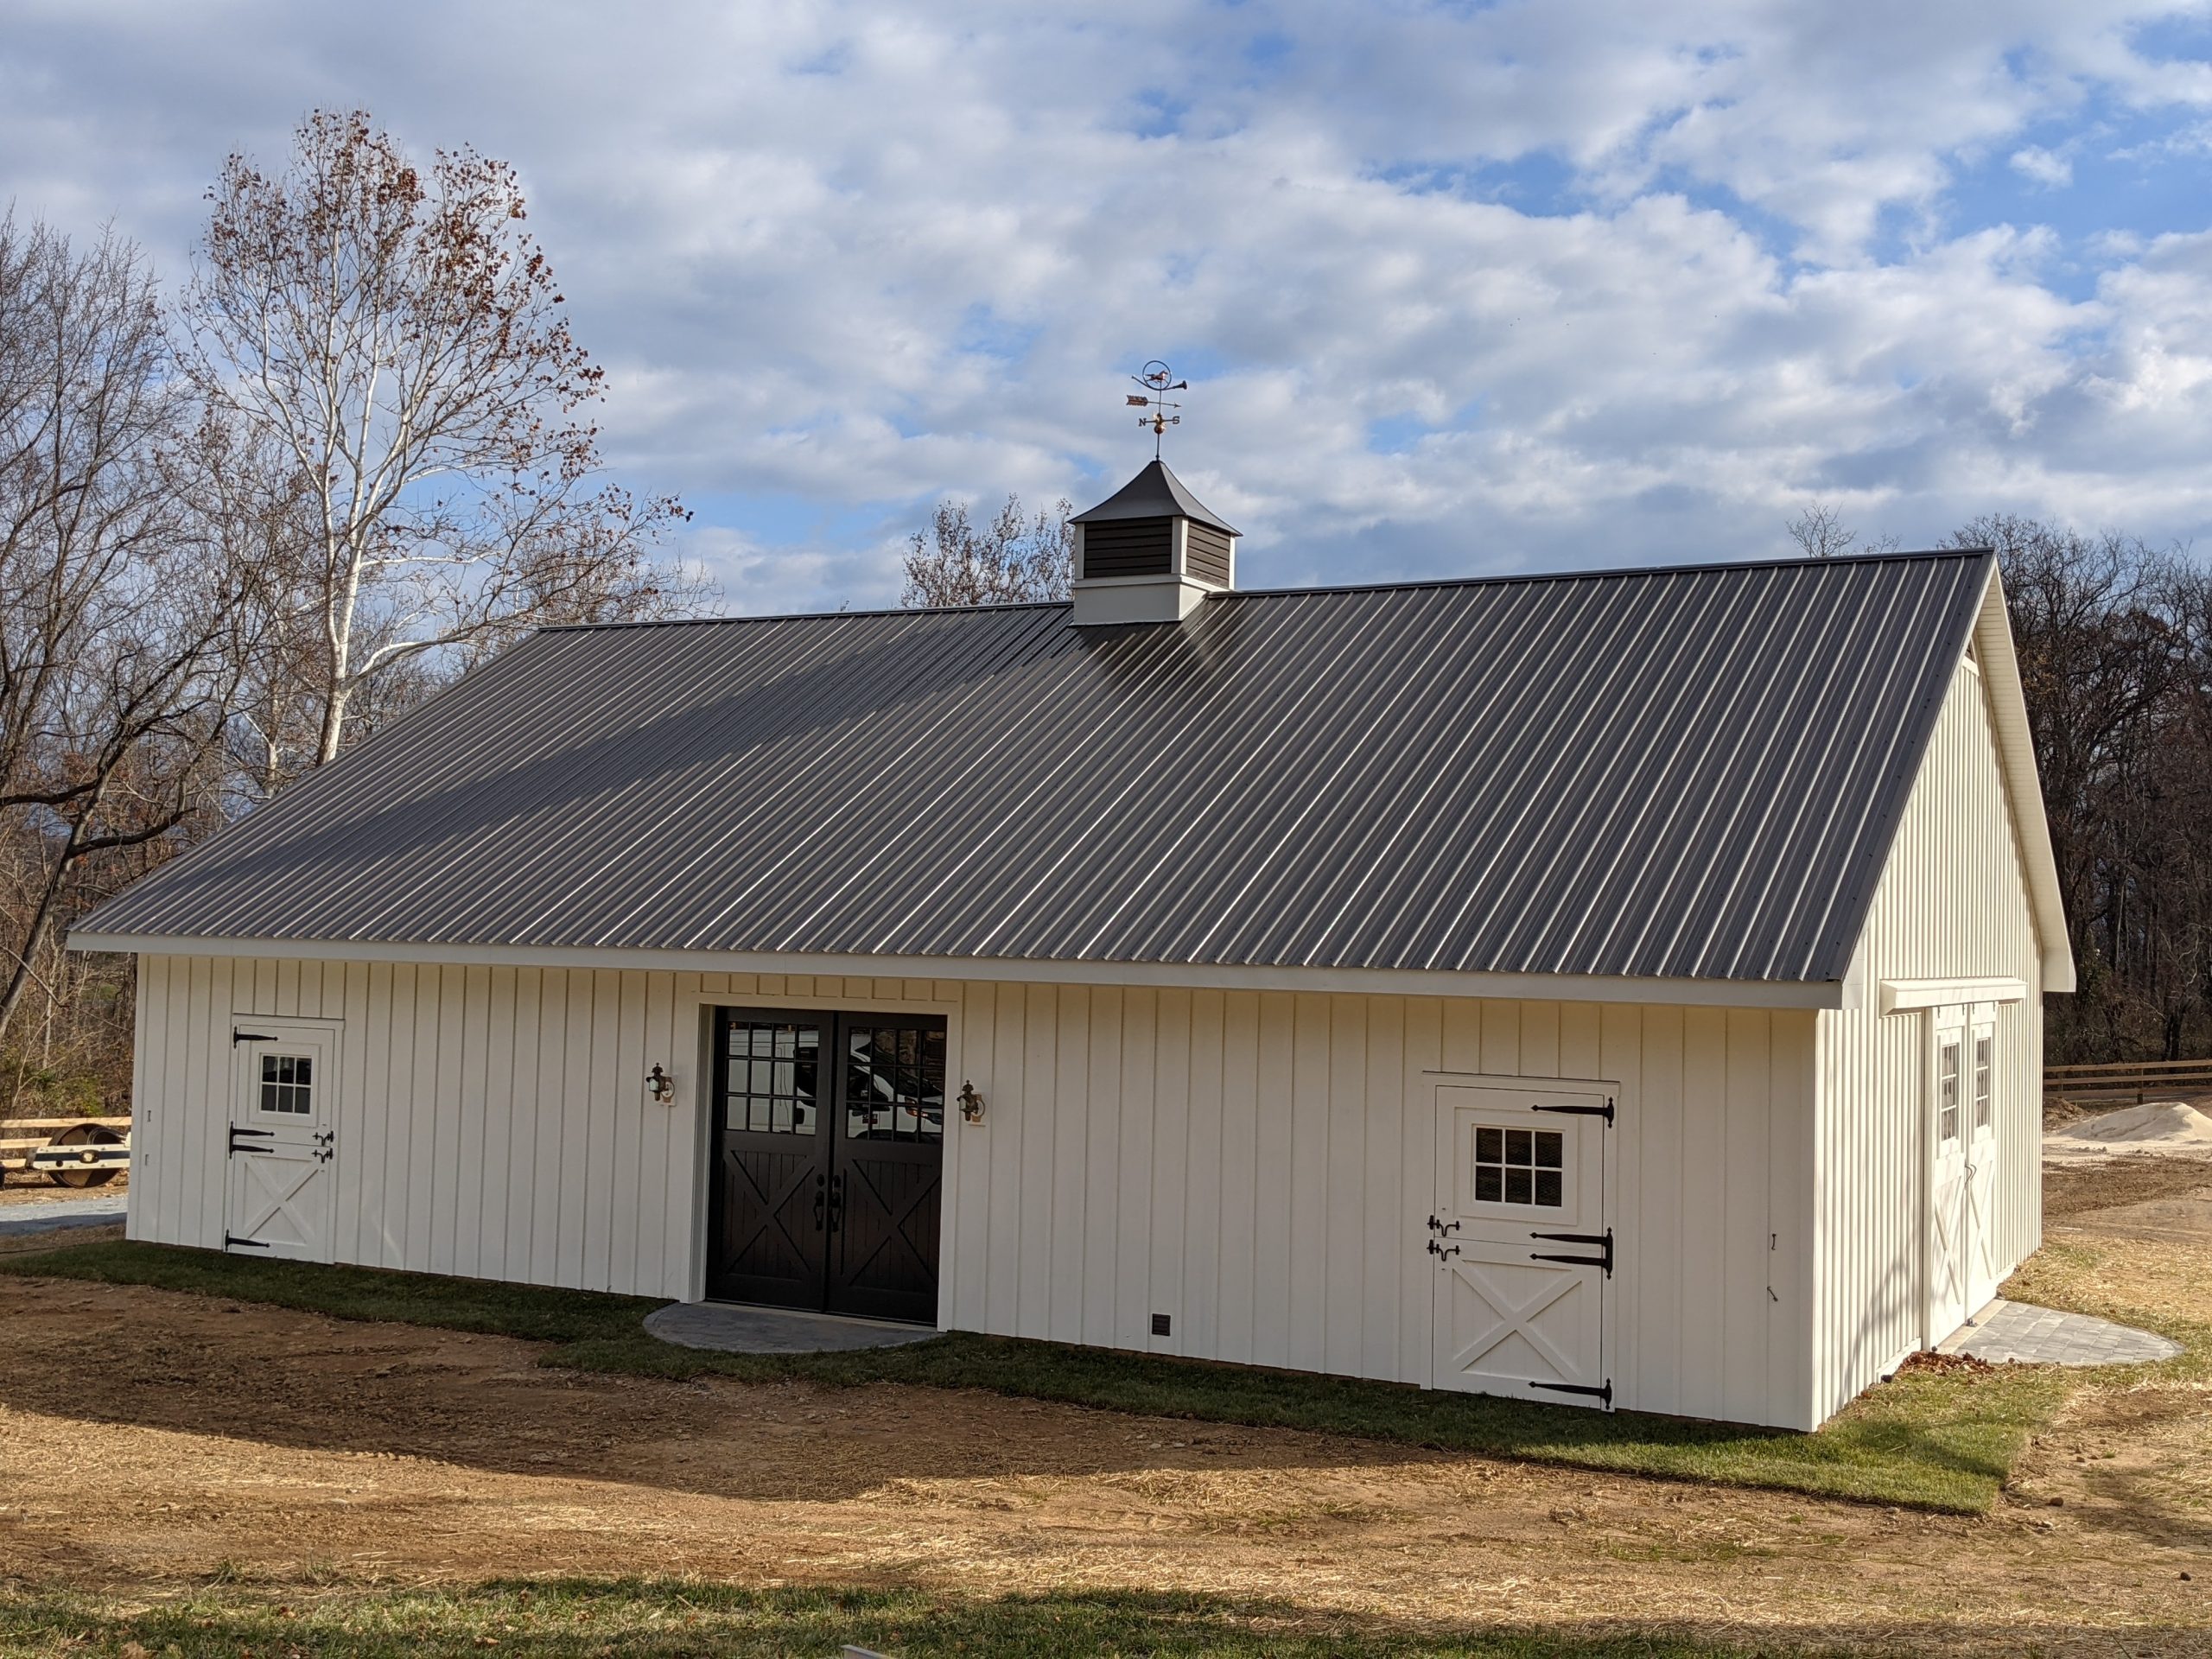 5-Star Equine Facilities: Keller Barn